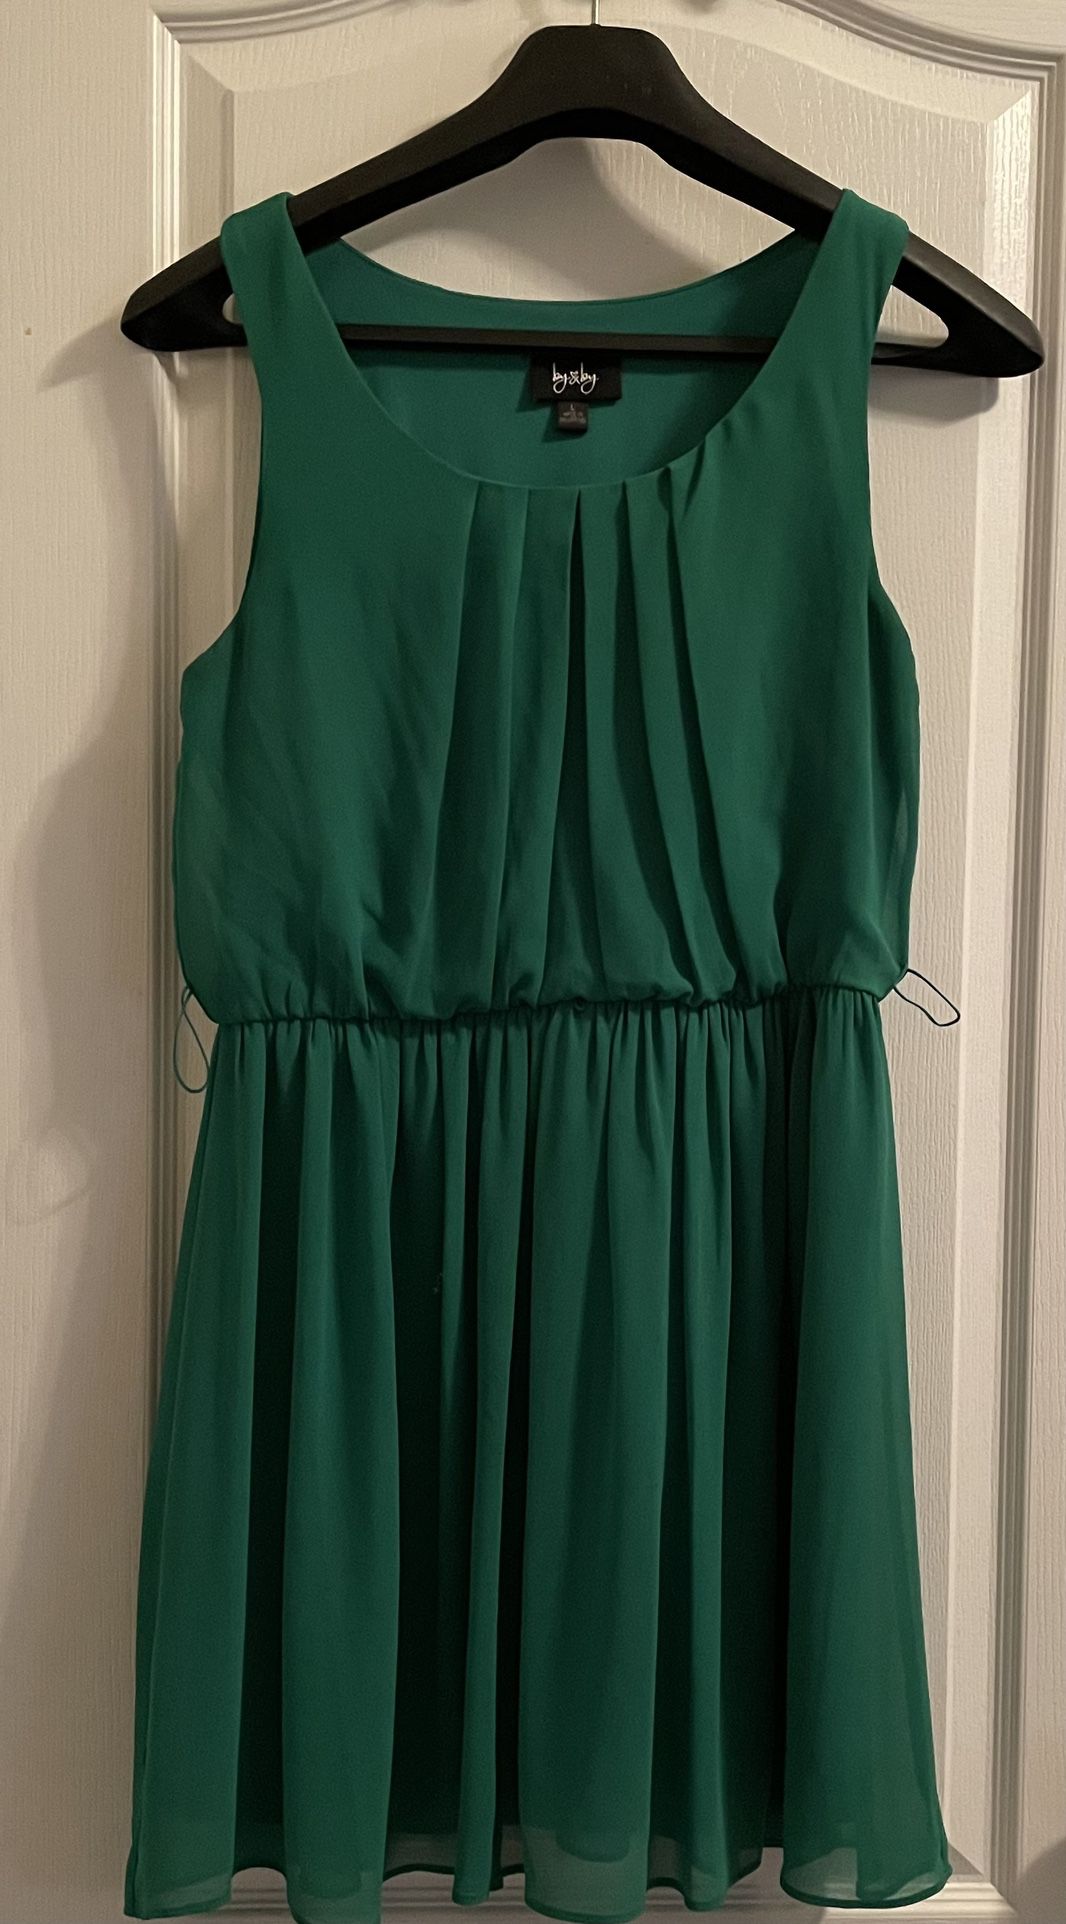 Green chiffon dress